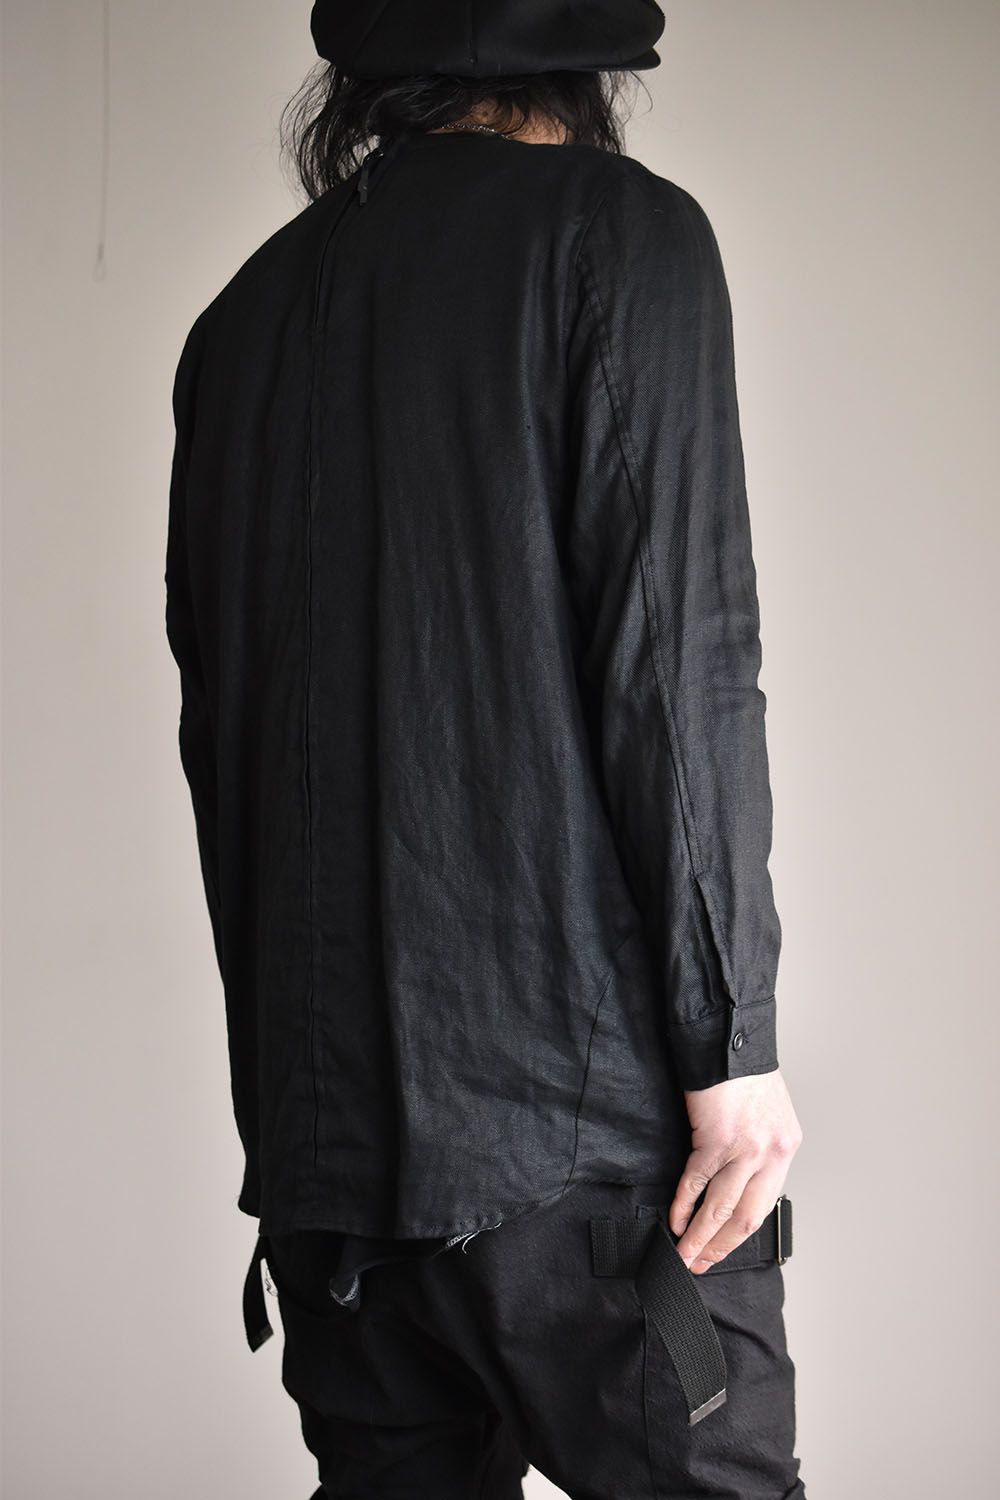 Solod Shirt L/S"Black"/ソリッドシャツロングスリーブ"ブラック"